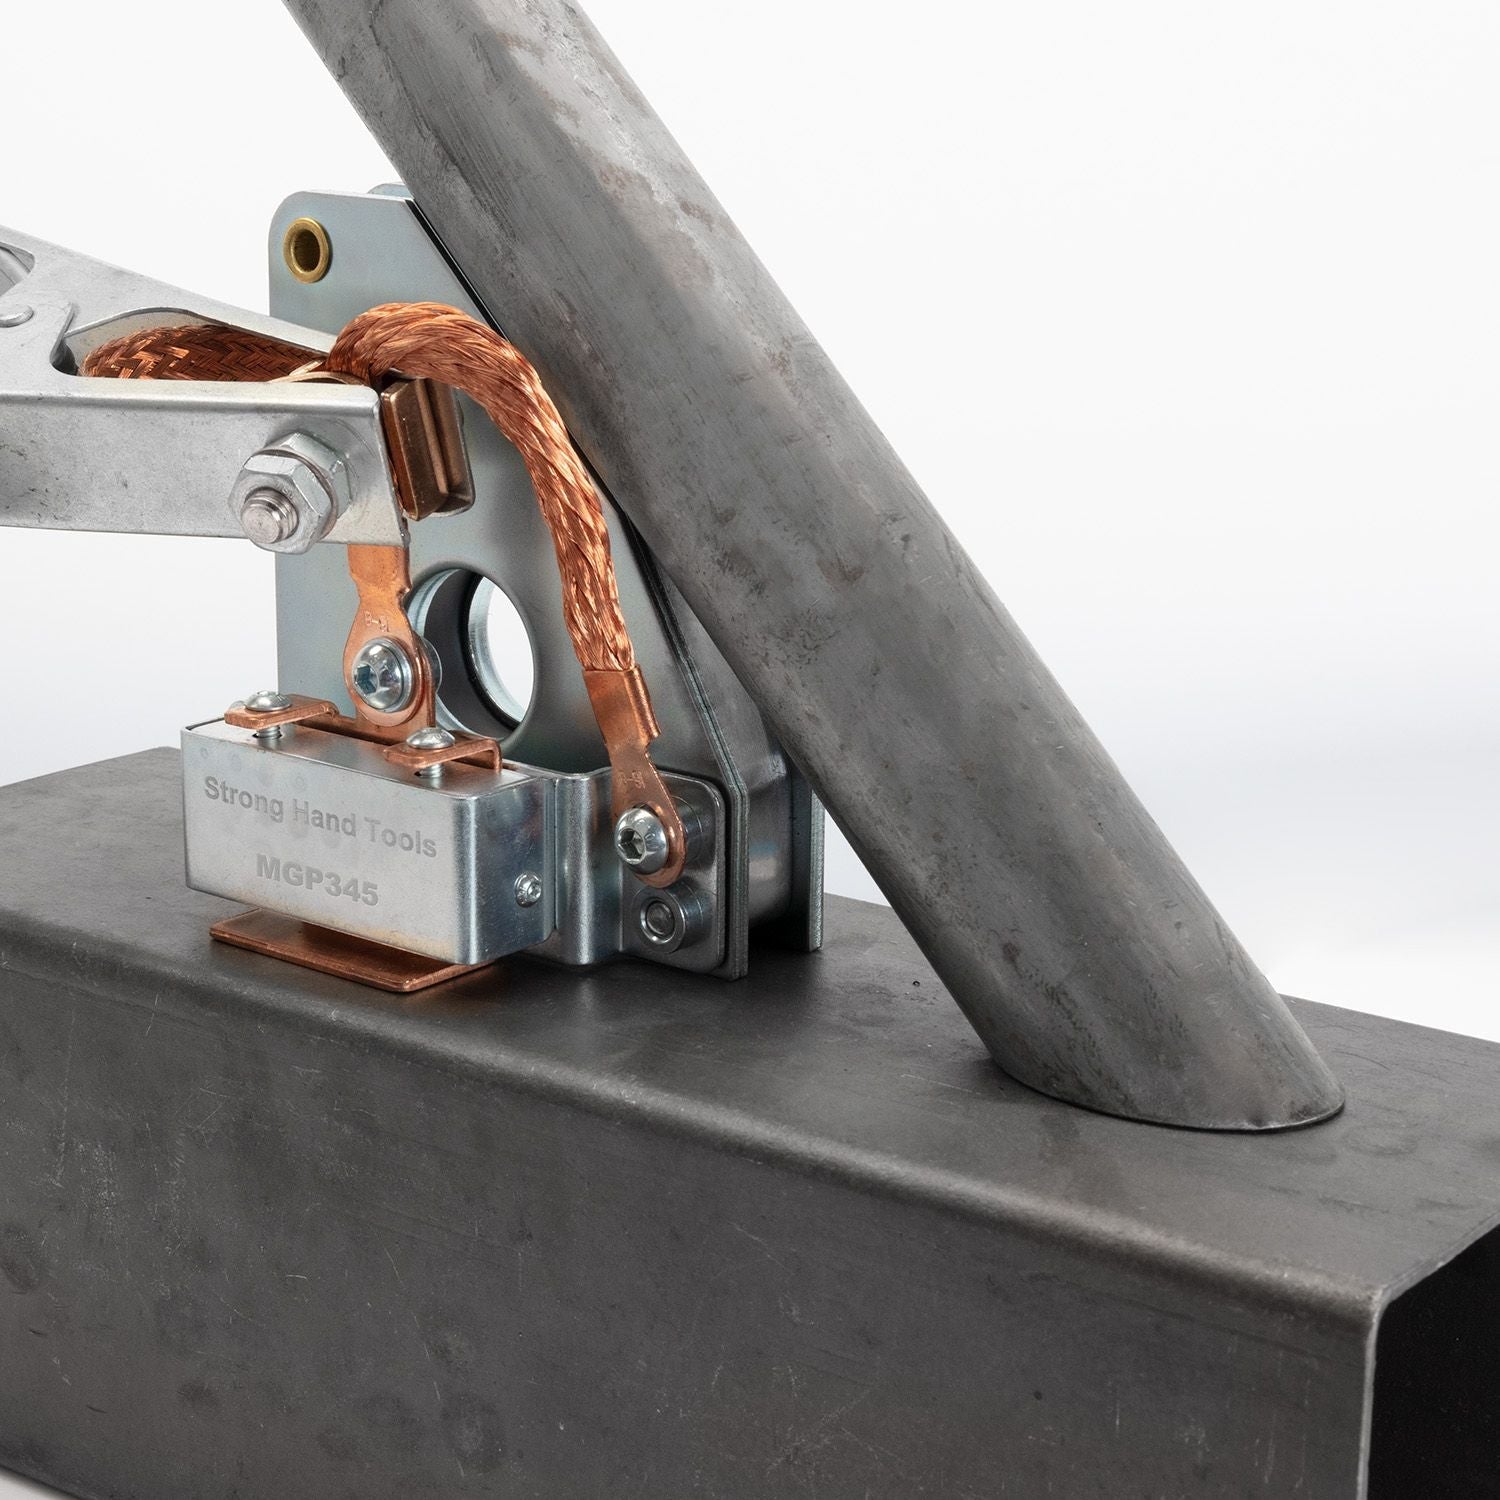 Strong Hand Tools MGP346 Multi-Angle Grounding Magnet